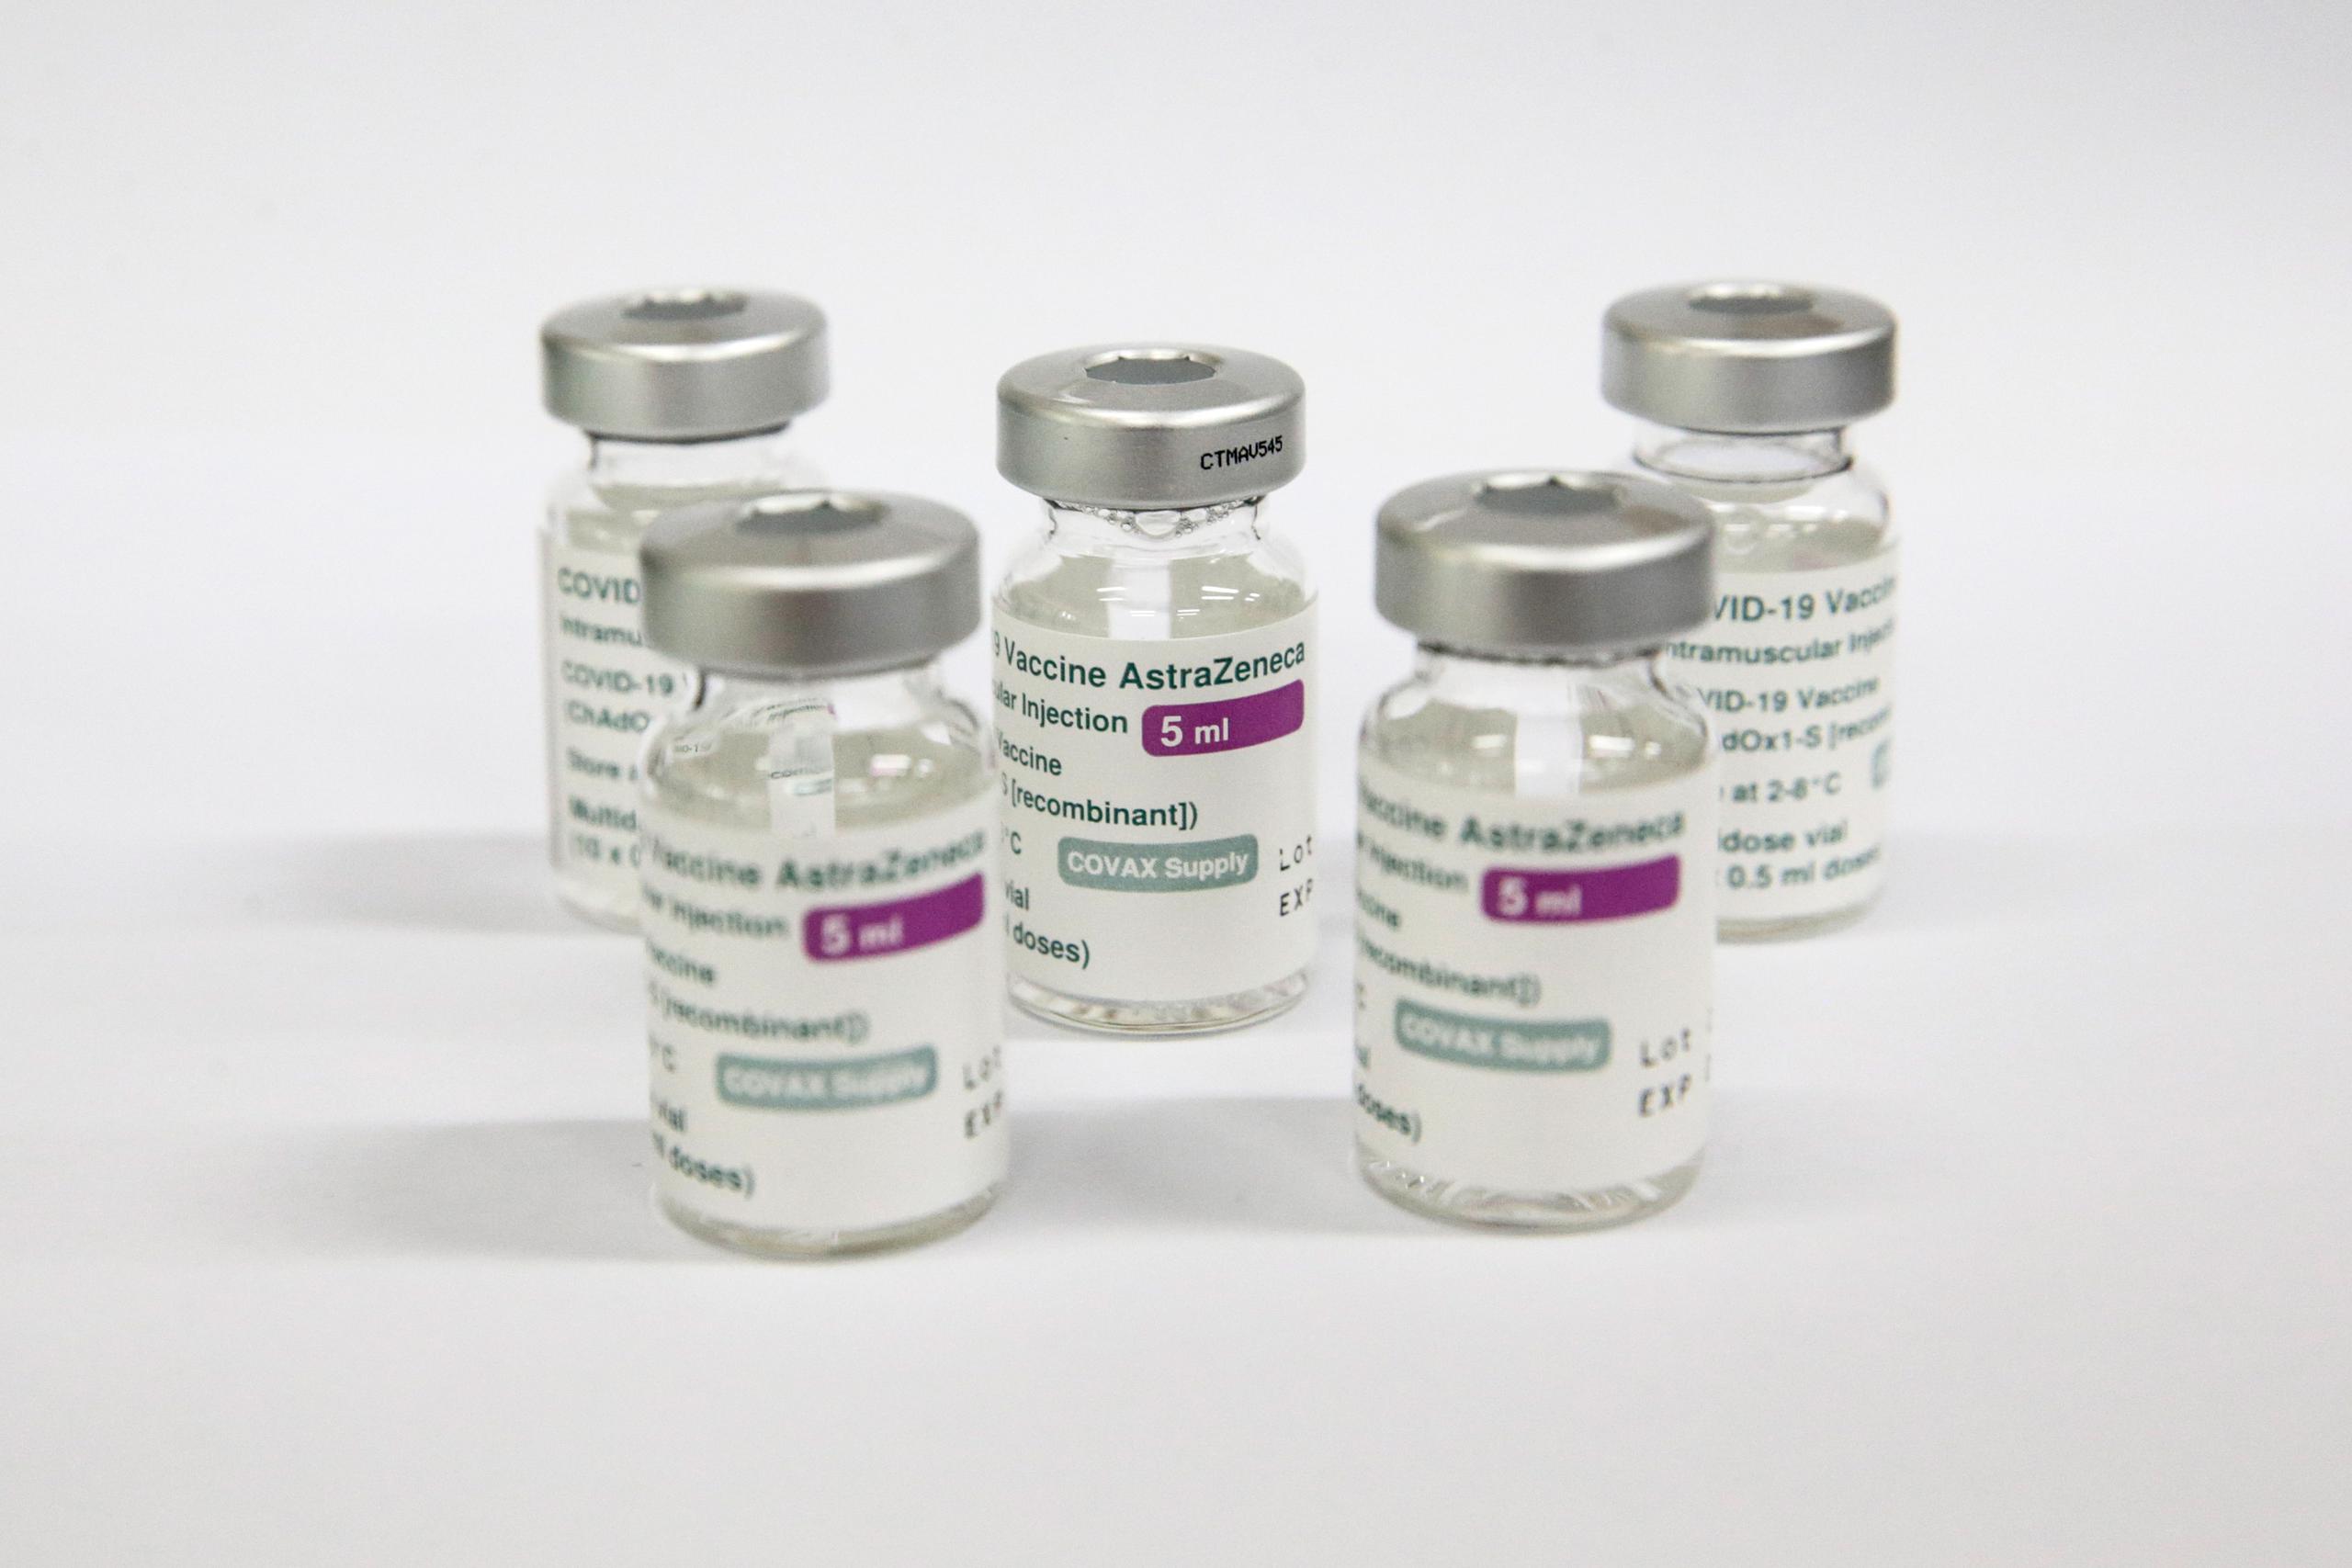 Este es el primer lote de vacunas que entrega AstraZeneca a Costa Rica como parte de un contrato de un millón de dosis.